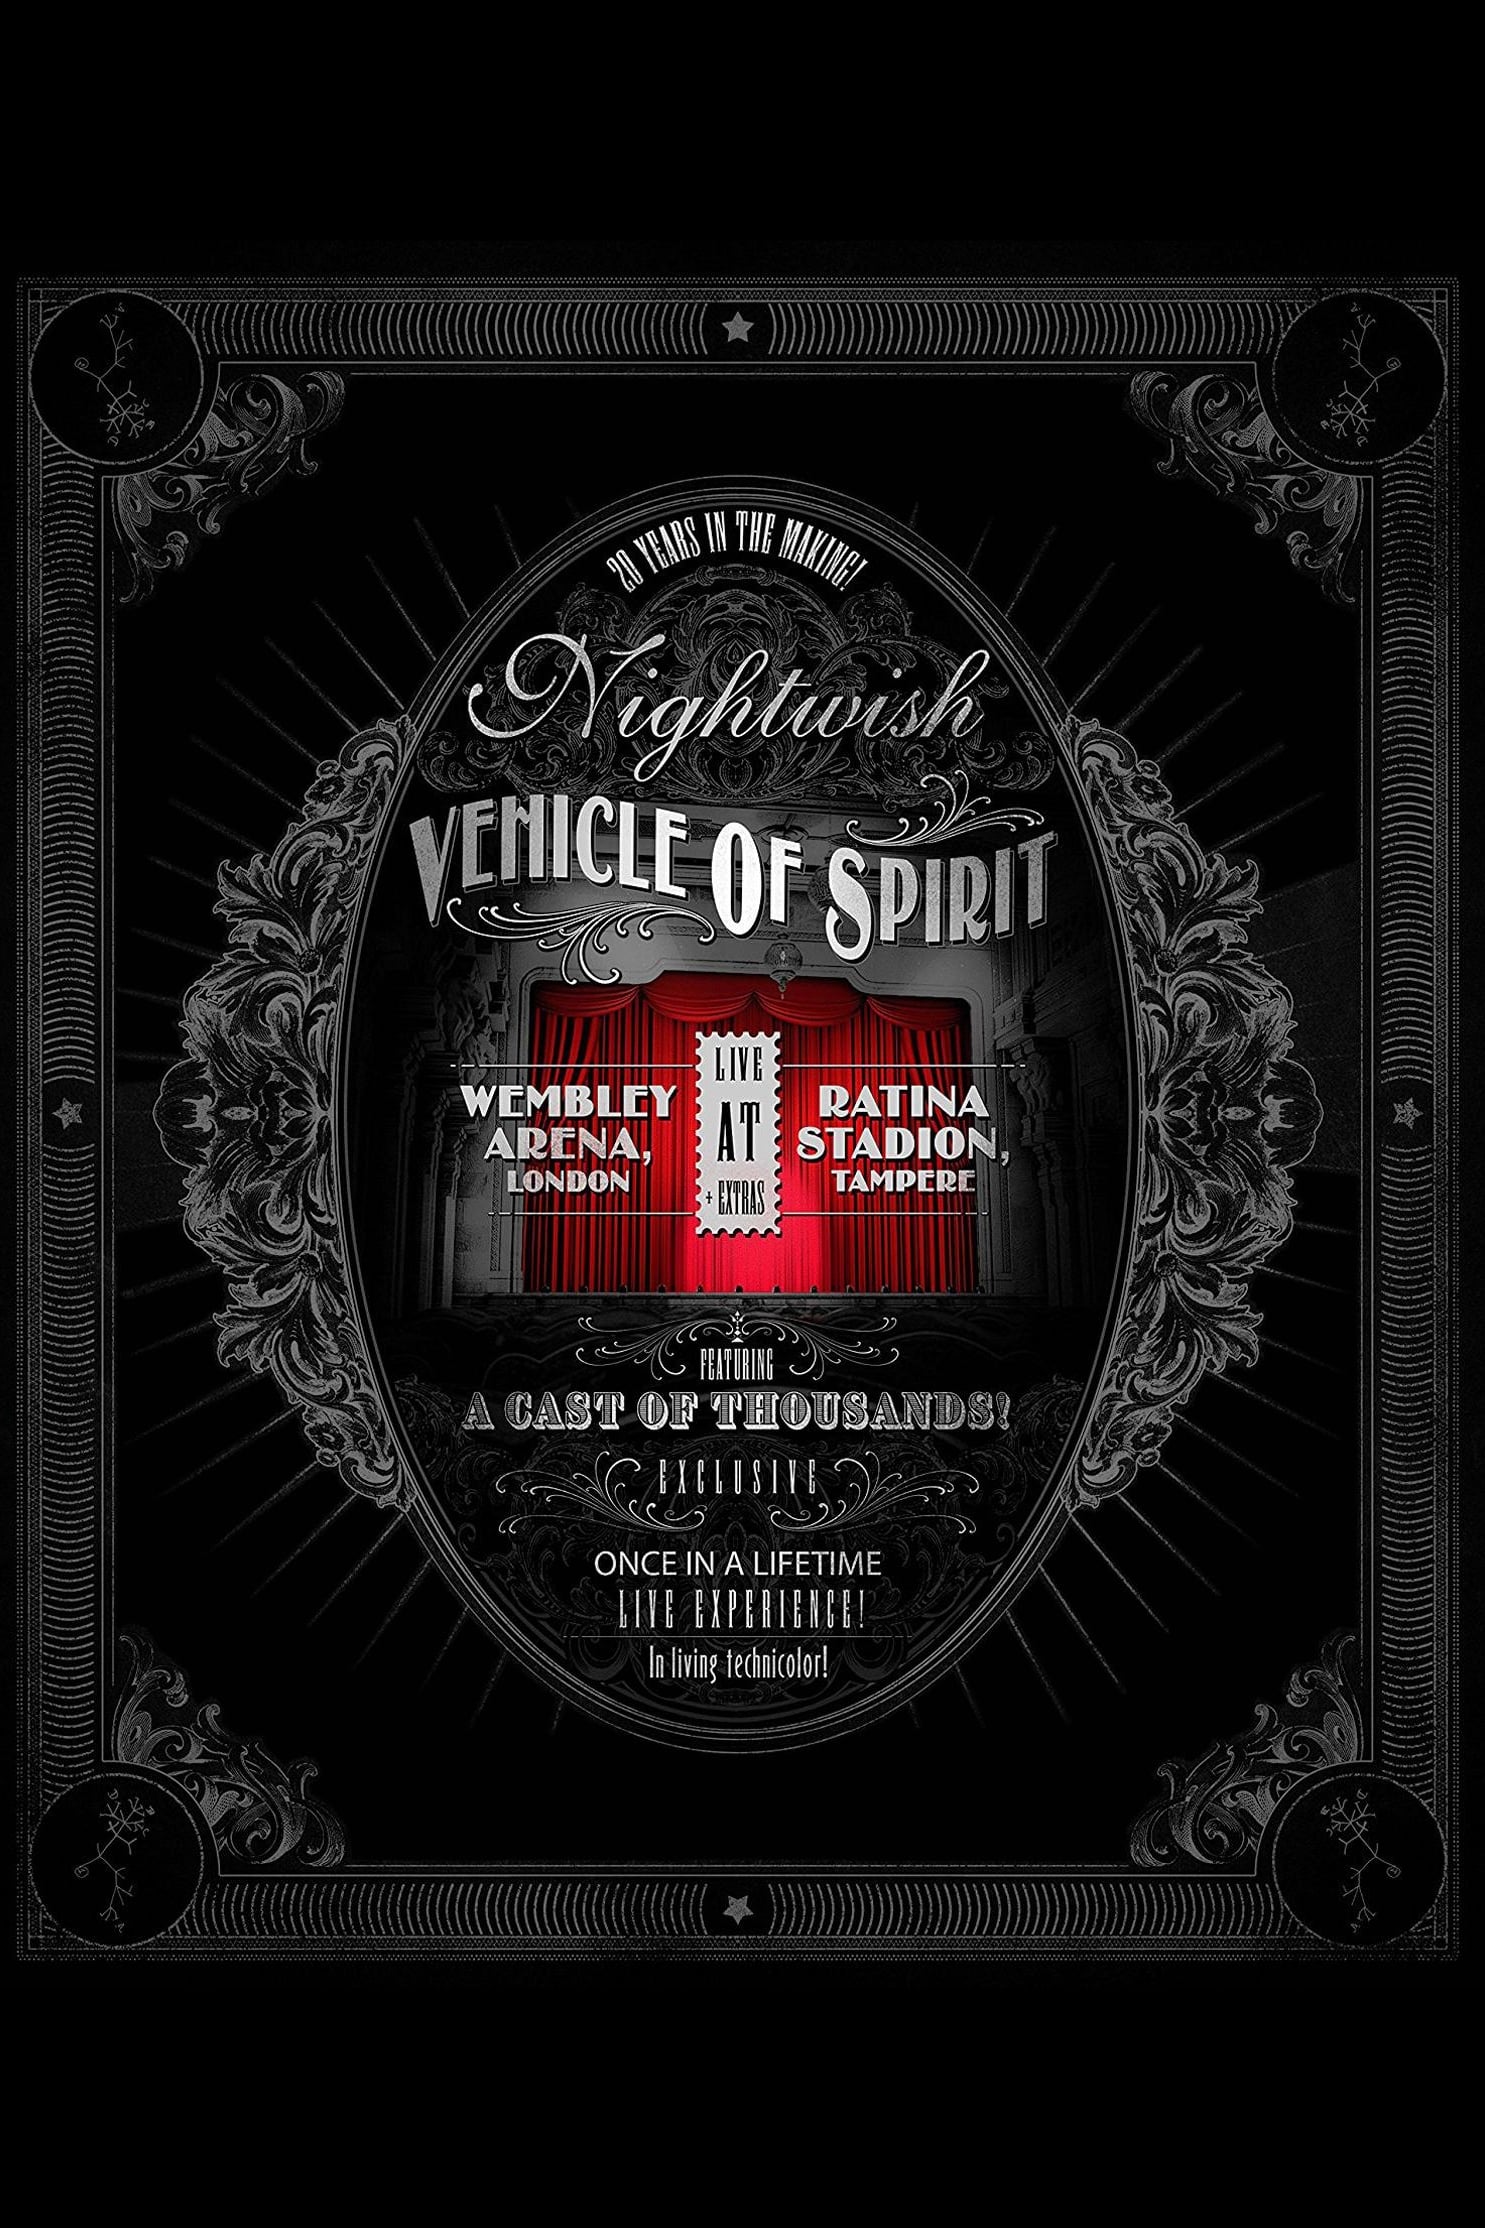 Nightwish: Vehicle Of Spirit